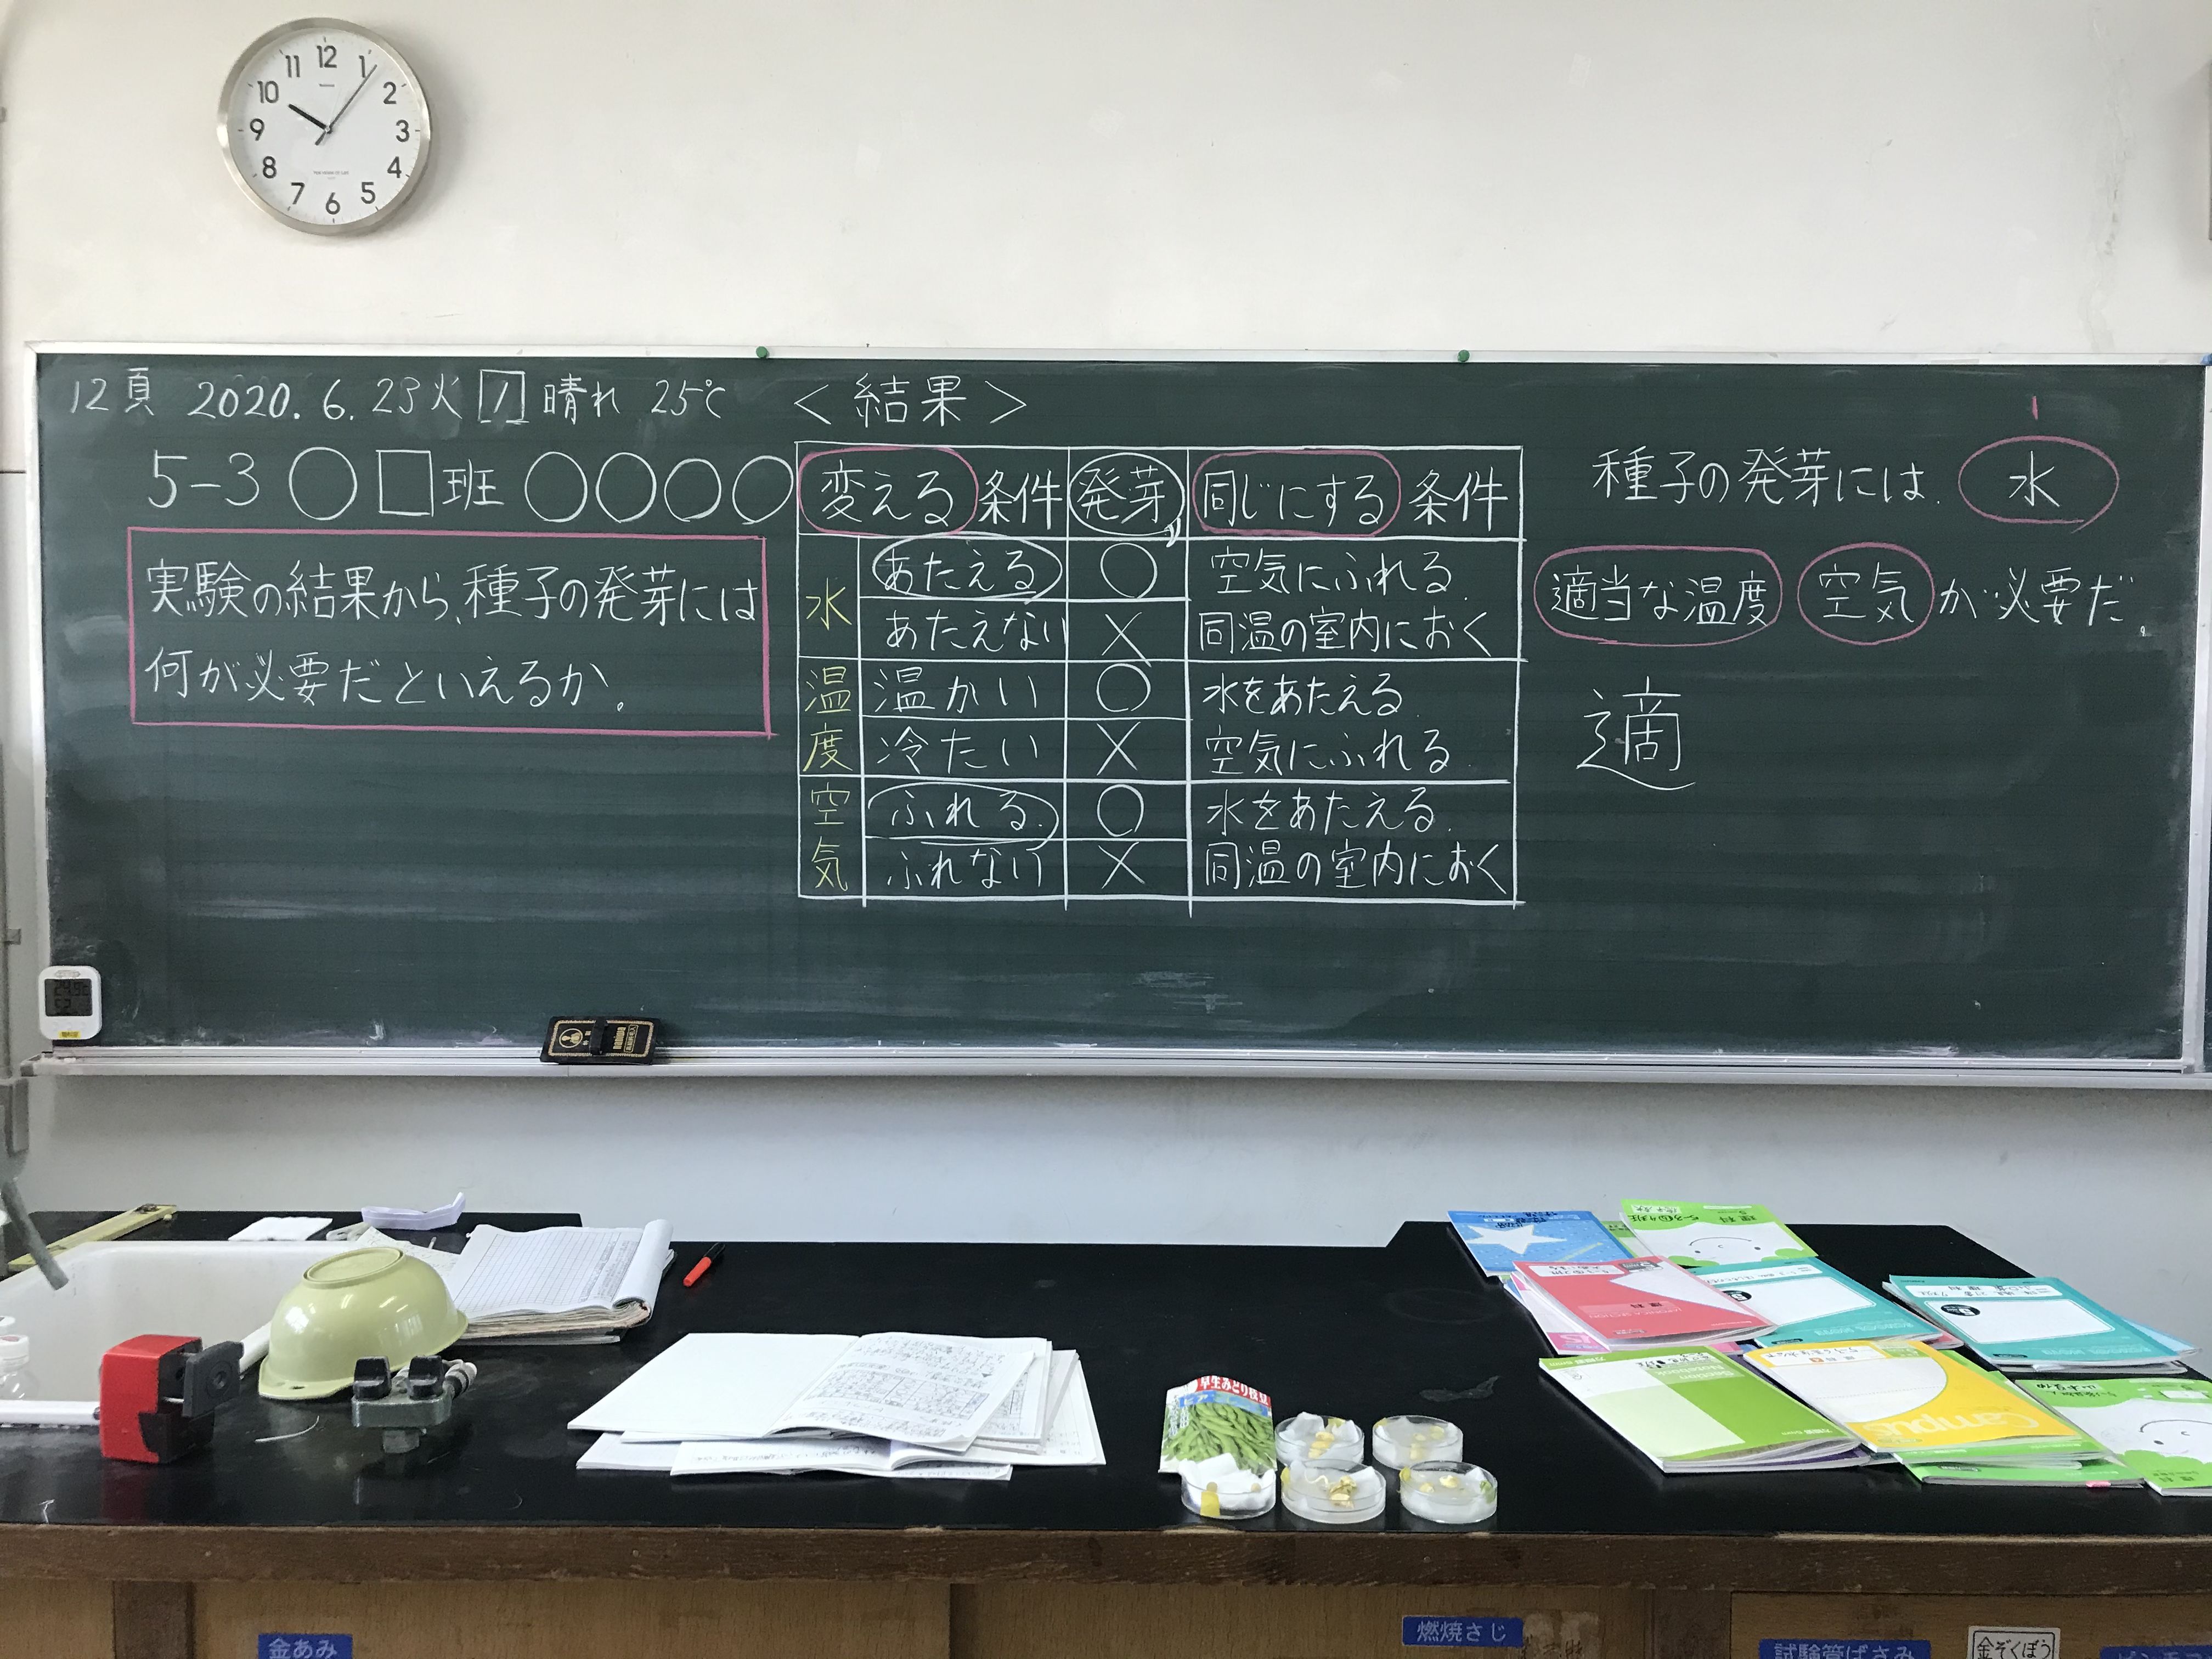 発芽実験成功 06 22 月 原田誉一の電脳通信 楽天ブログ